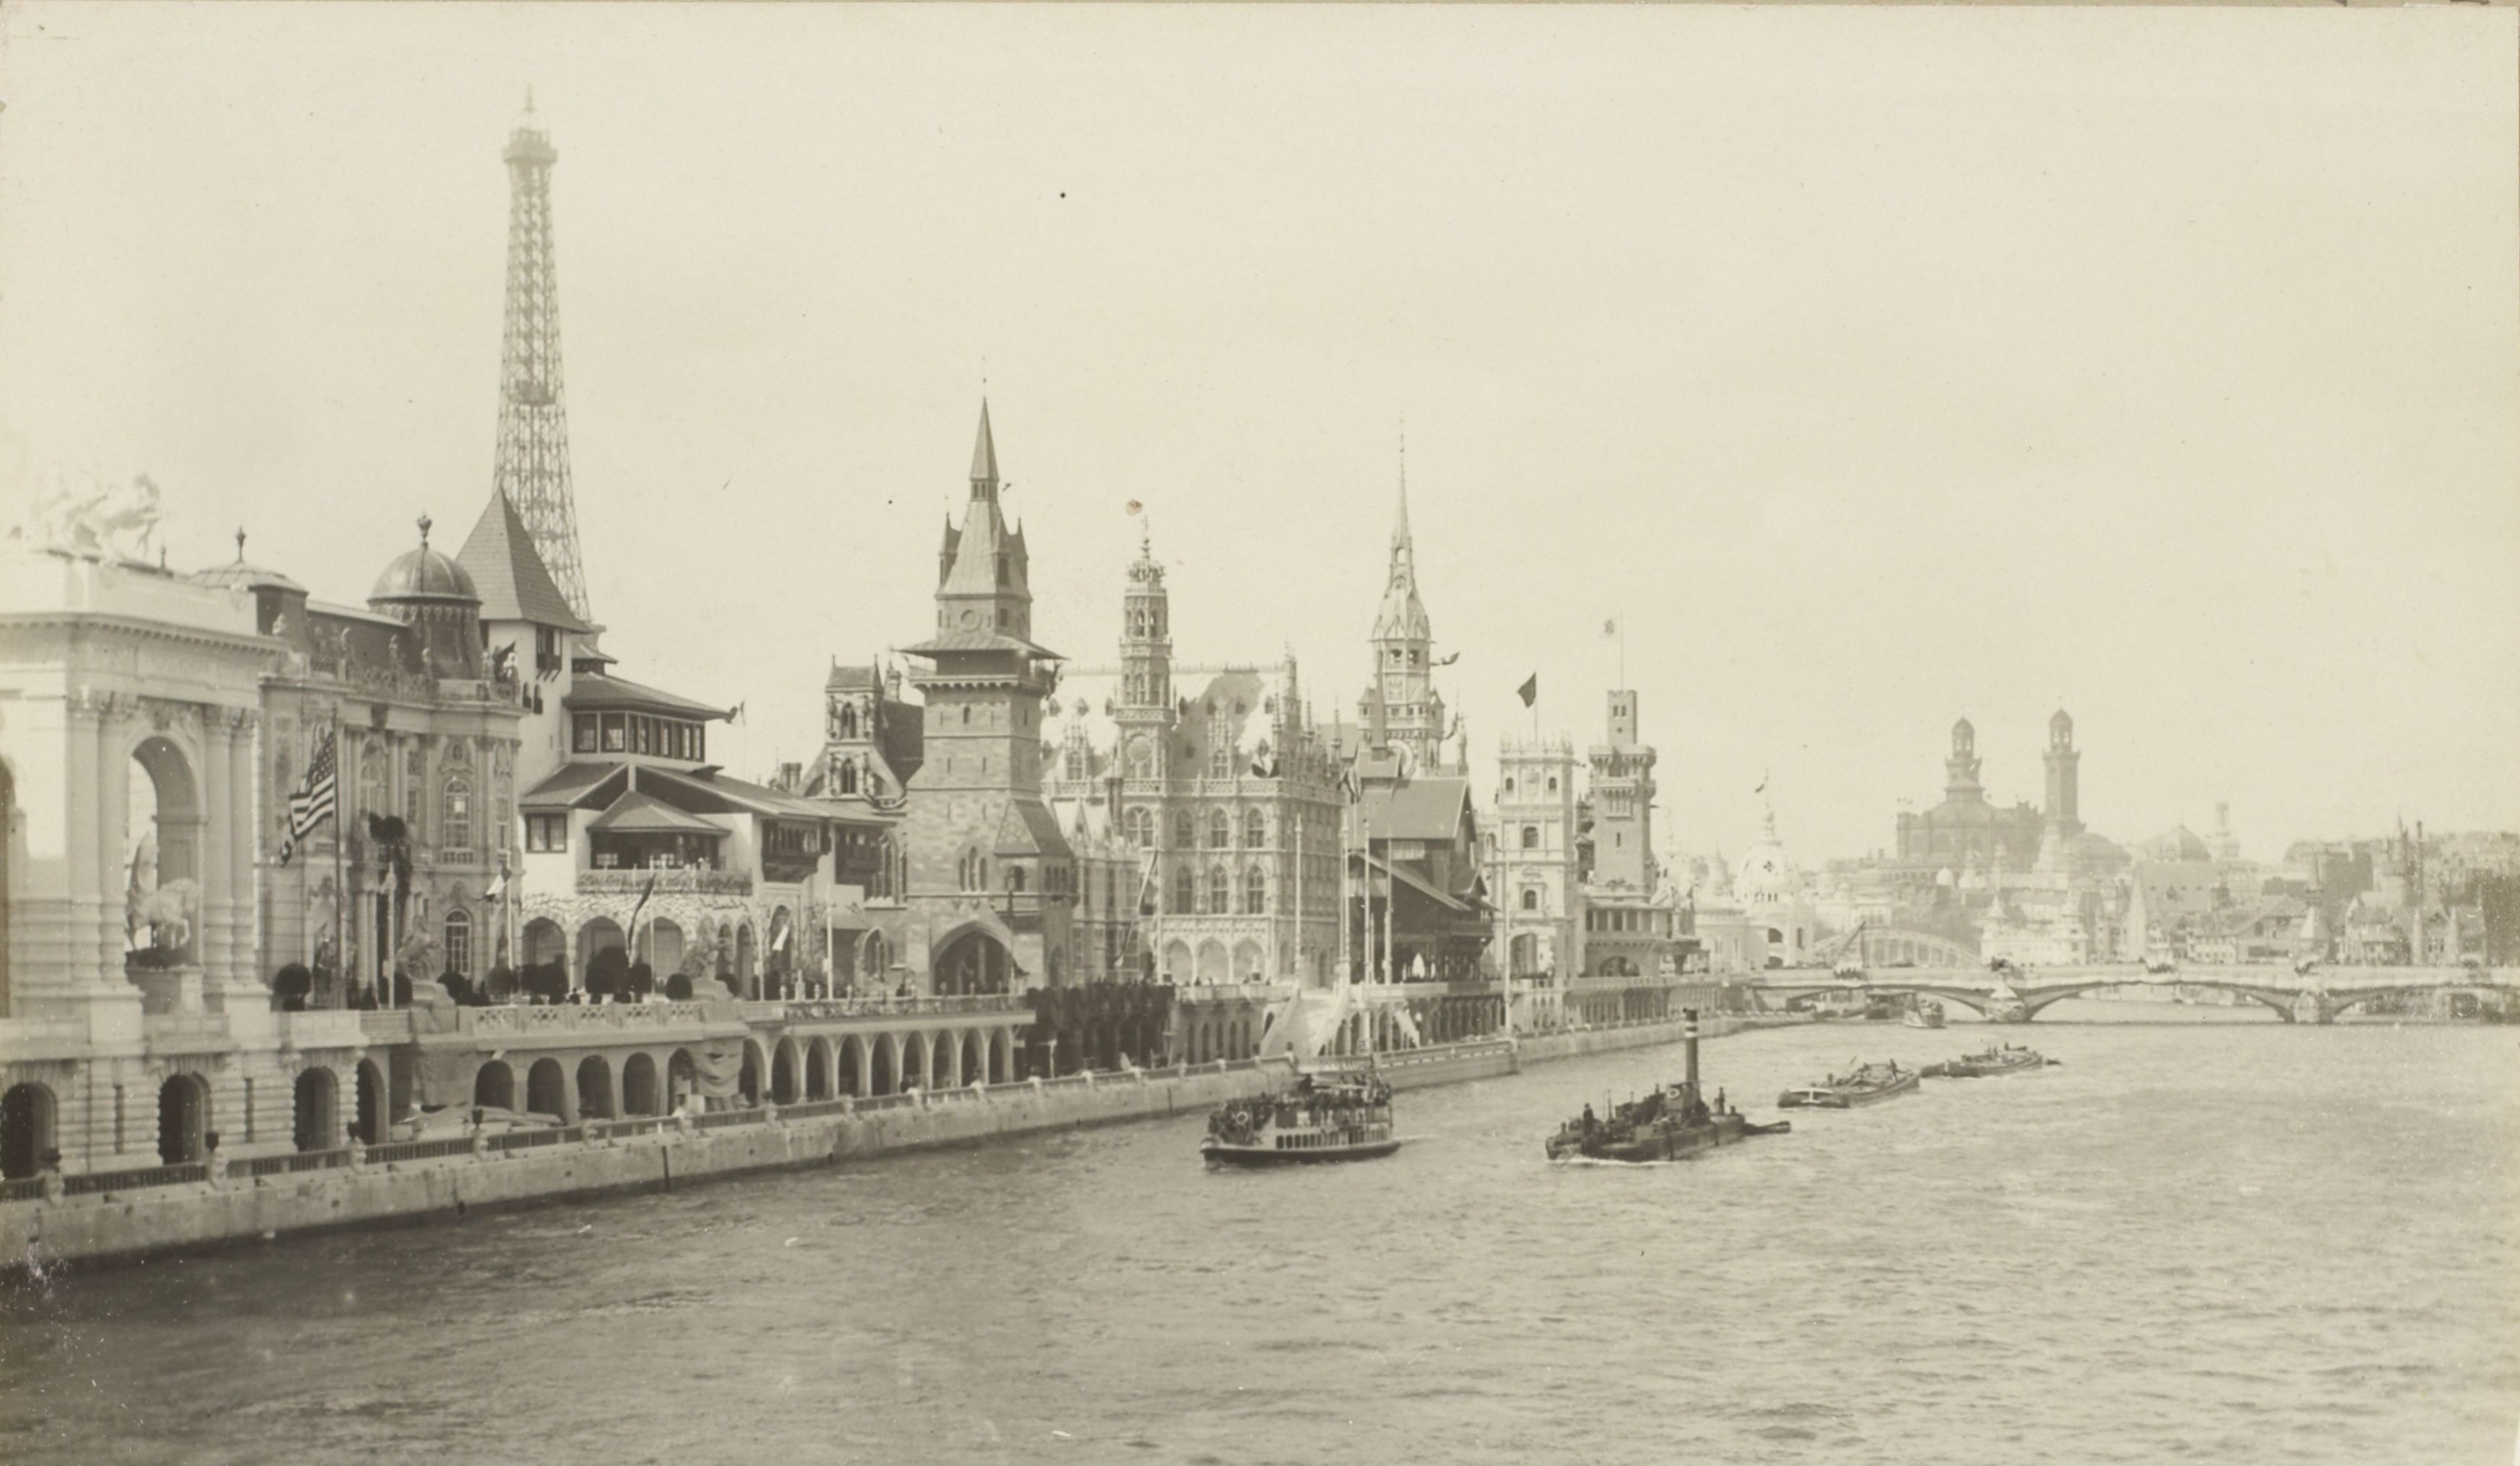 L'exposition universelle de 1900 | RetroNews - Le site de presse de la BnF